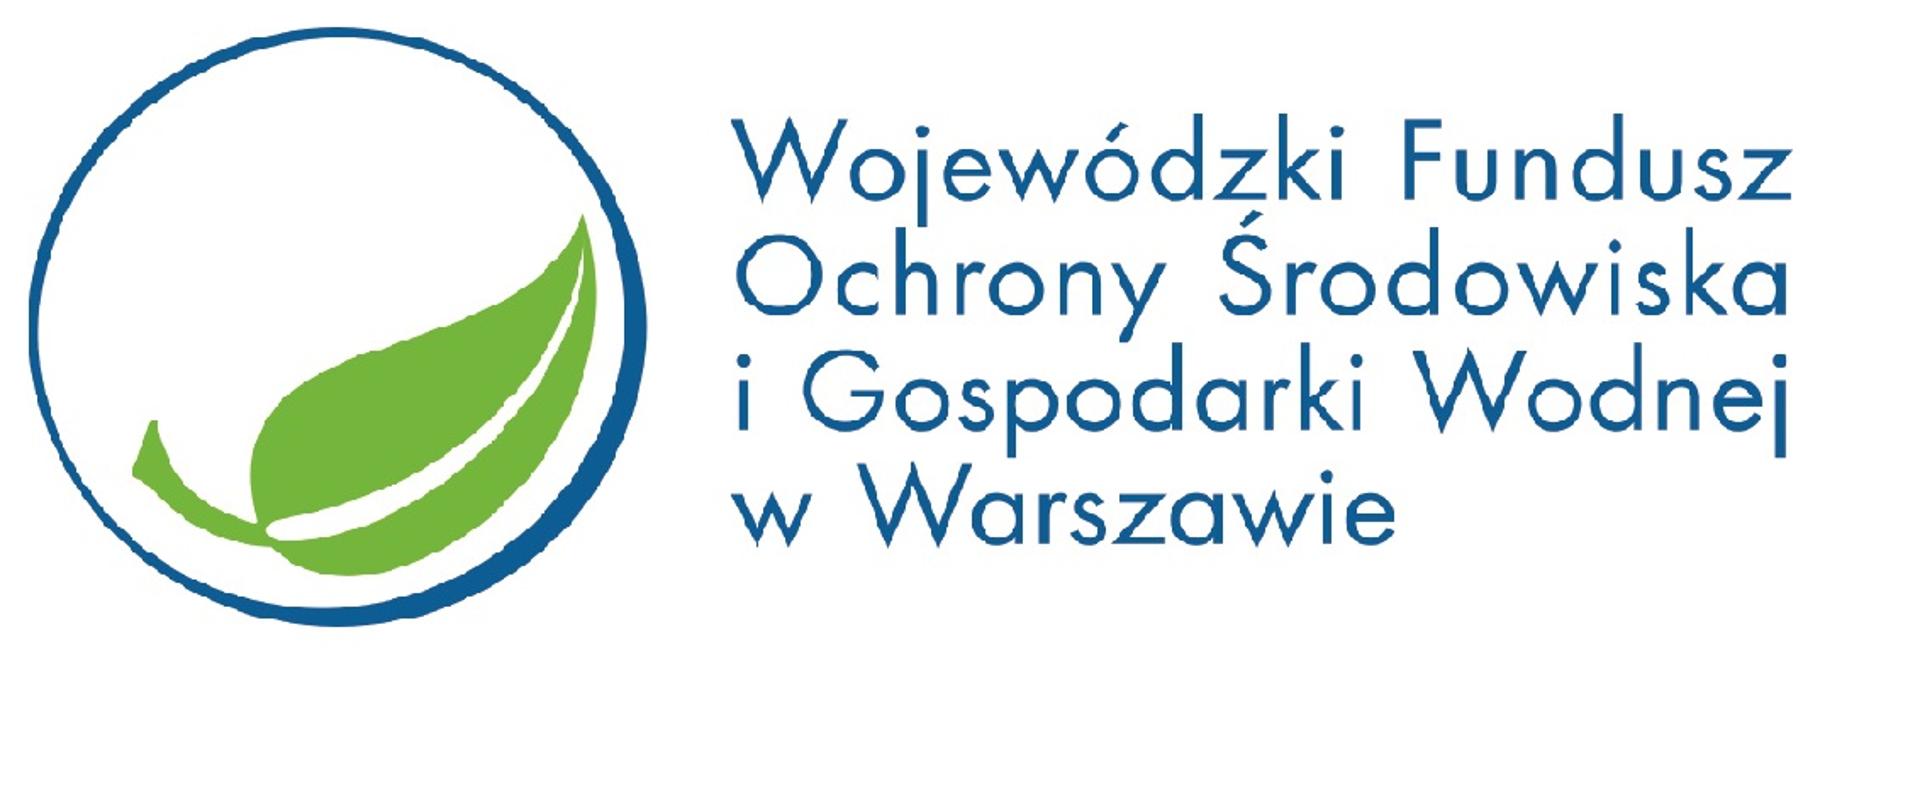 WFOSiGW logo